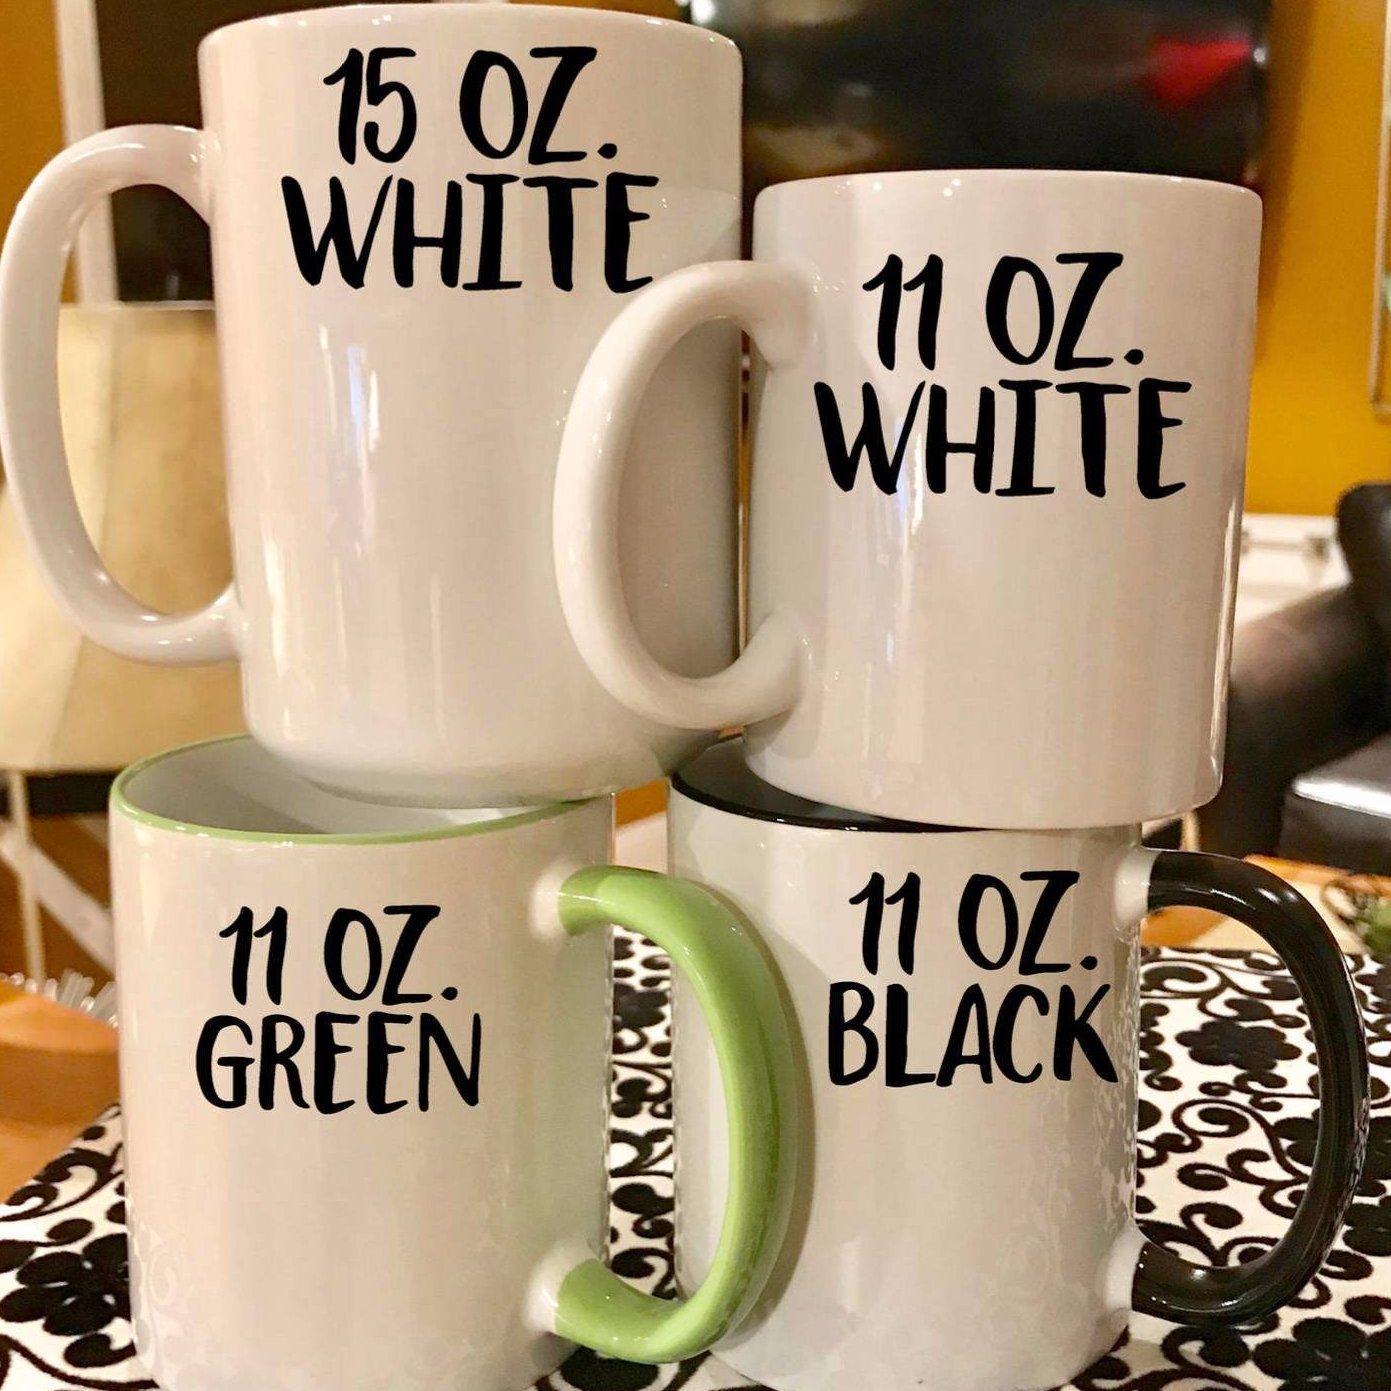 Mom Mug - 11oz and 15oz Mom Coffee Mugs - The Best Mother's Day Mug - Funny Mom Birthday Gift Mug - Coffee Mugs and Cups with Sayings by, Size: 11 oz